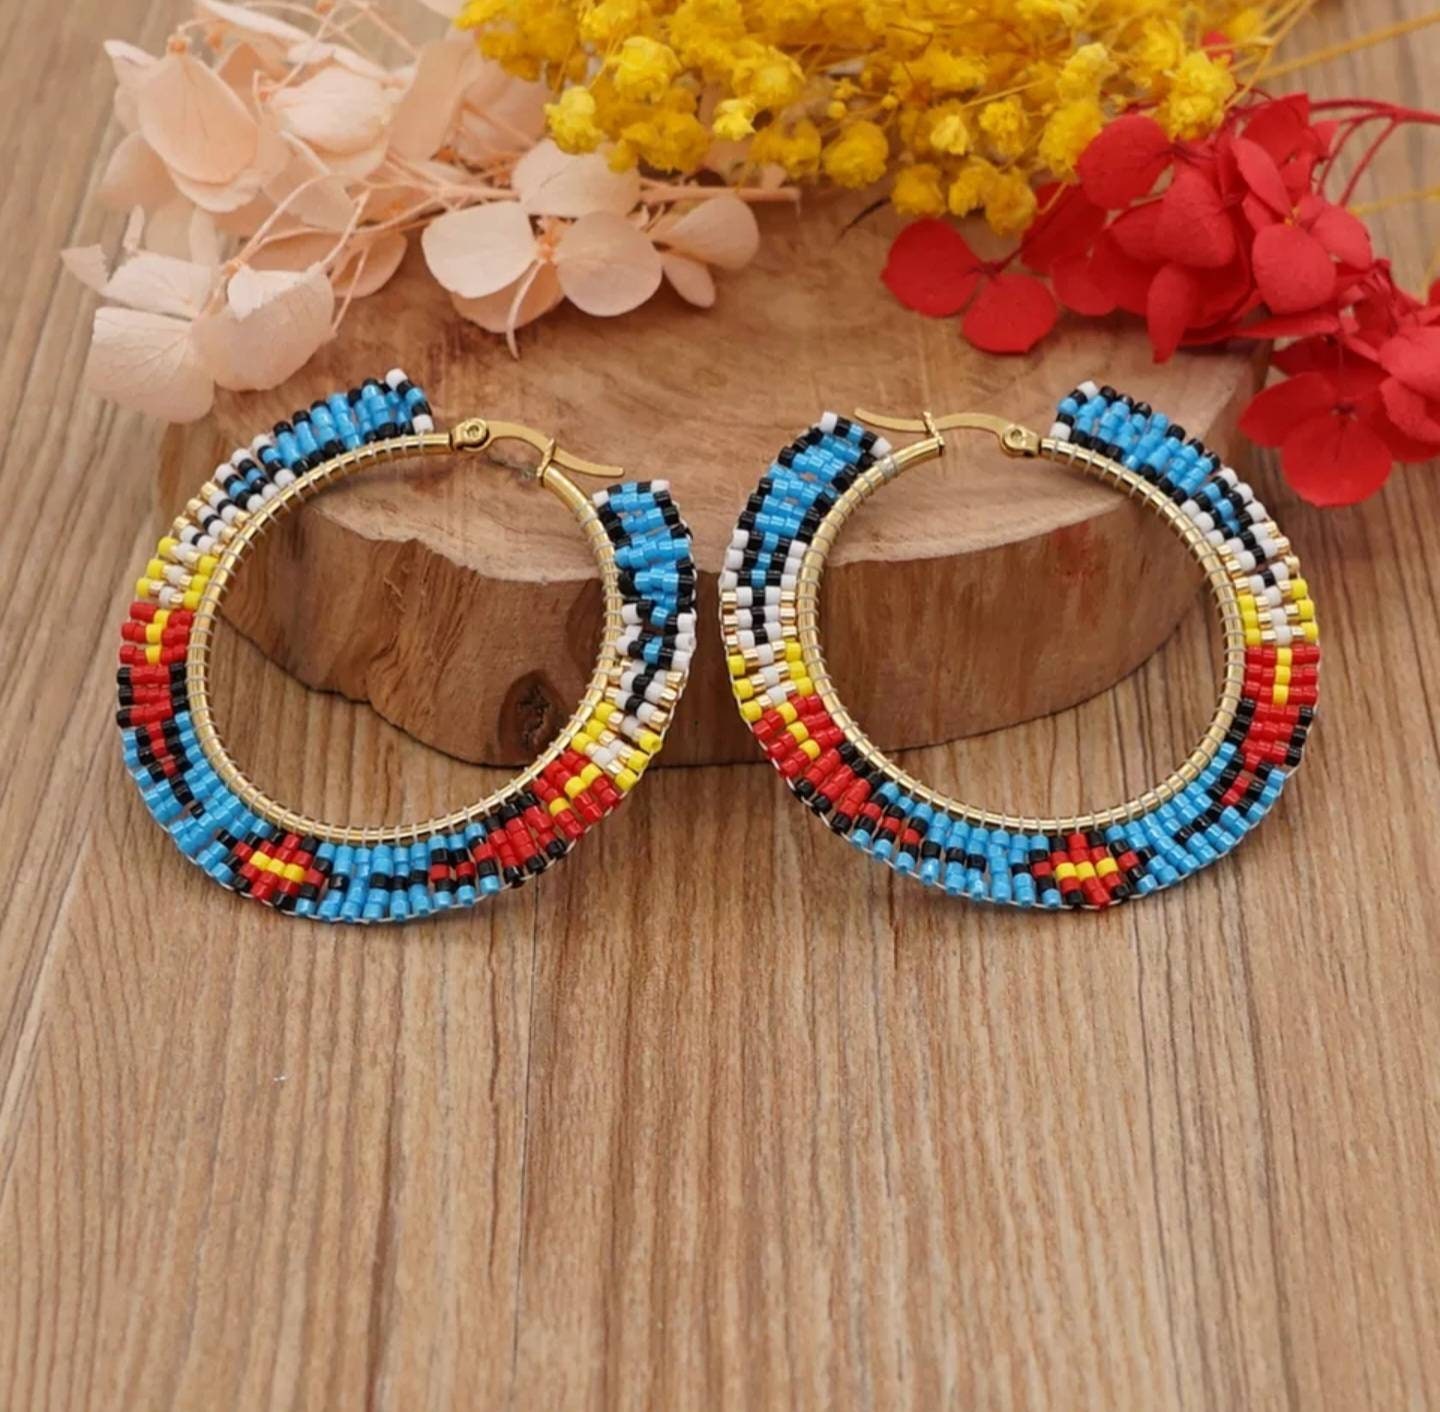 Beaded Hoop Earrings Native American Indian Style Earrings - Etsy